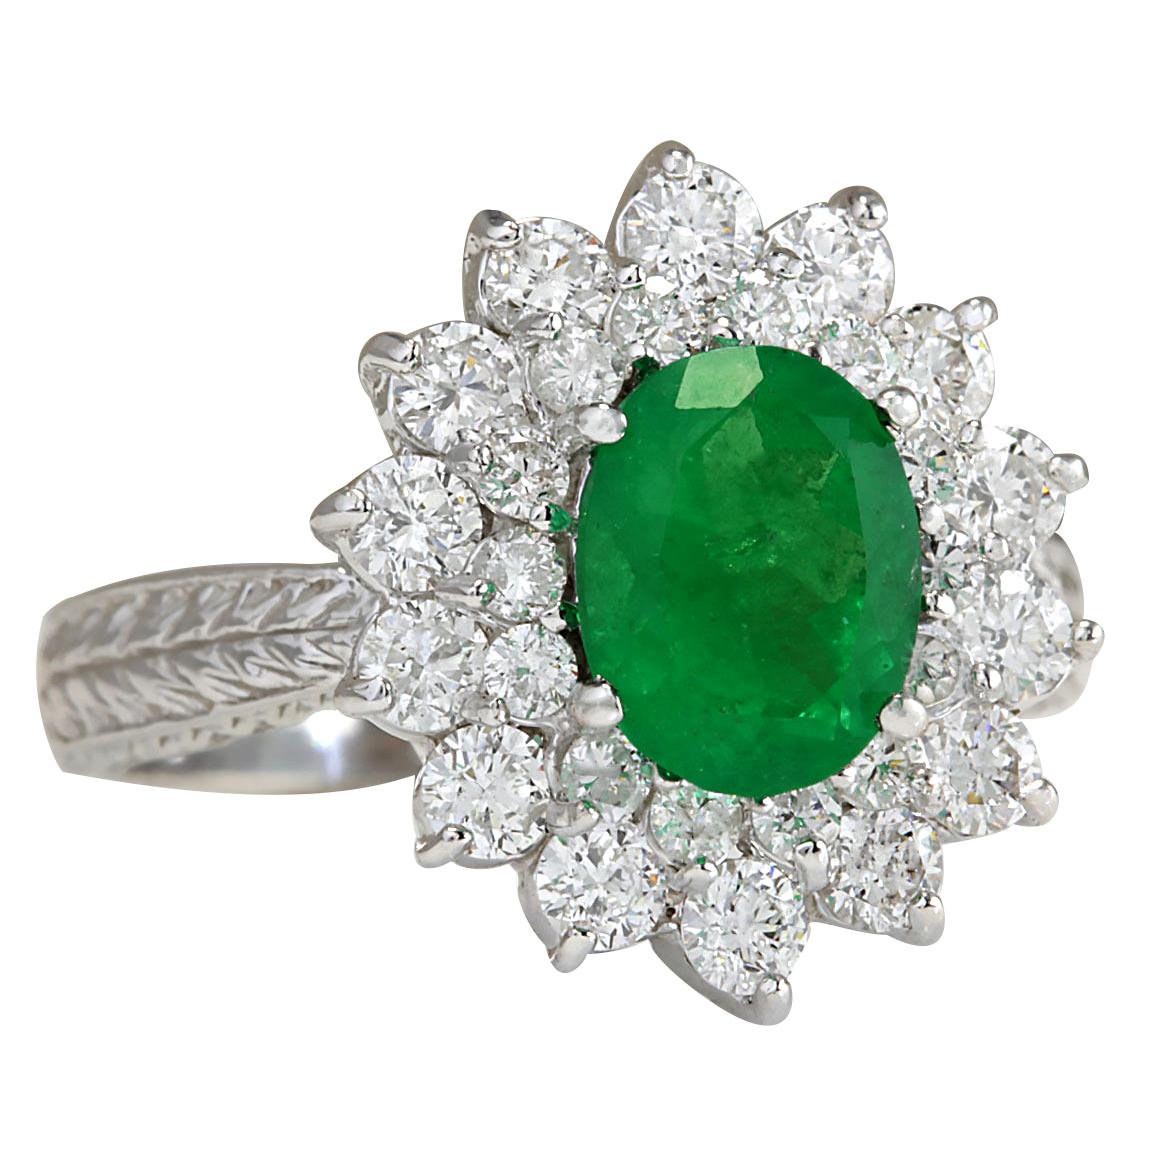 2.50 Carat Natural Emerald 14 Karat White Gold Diamond Ring
Stamped: 14K White Gold
Total Ring Weight: 5.0 Grams
Total Natural Emerald Weight is 1.44 Carat (Measures: 8.00x6.00 mm)
Color: Green
Total Natural Diamond Weight is 1.06 Carat
Color: F-G,